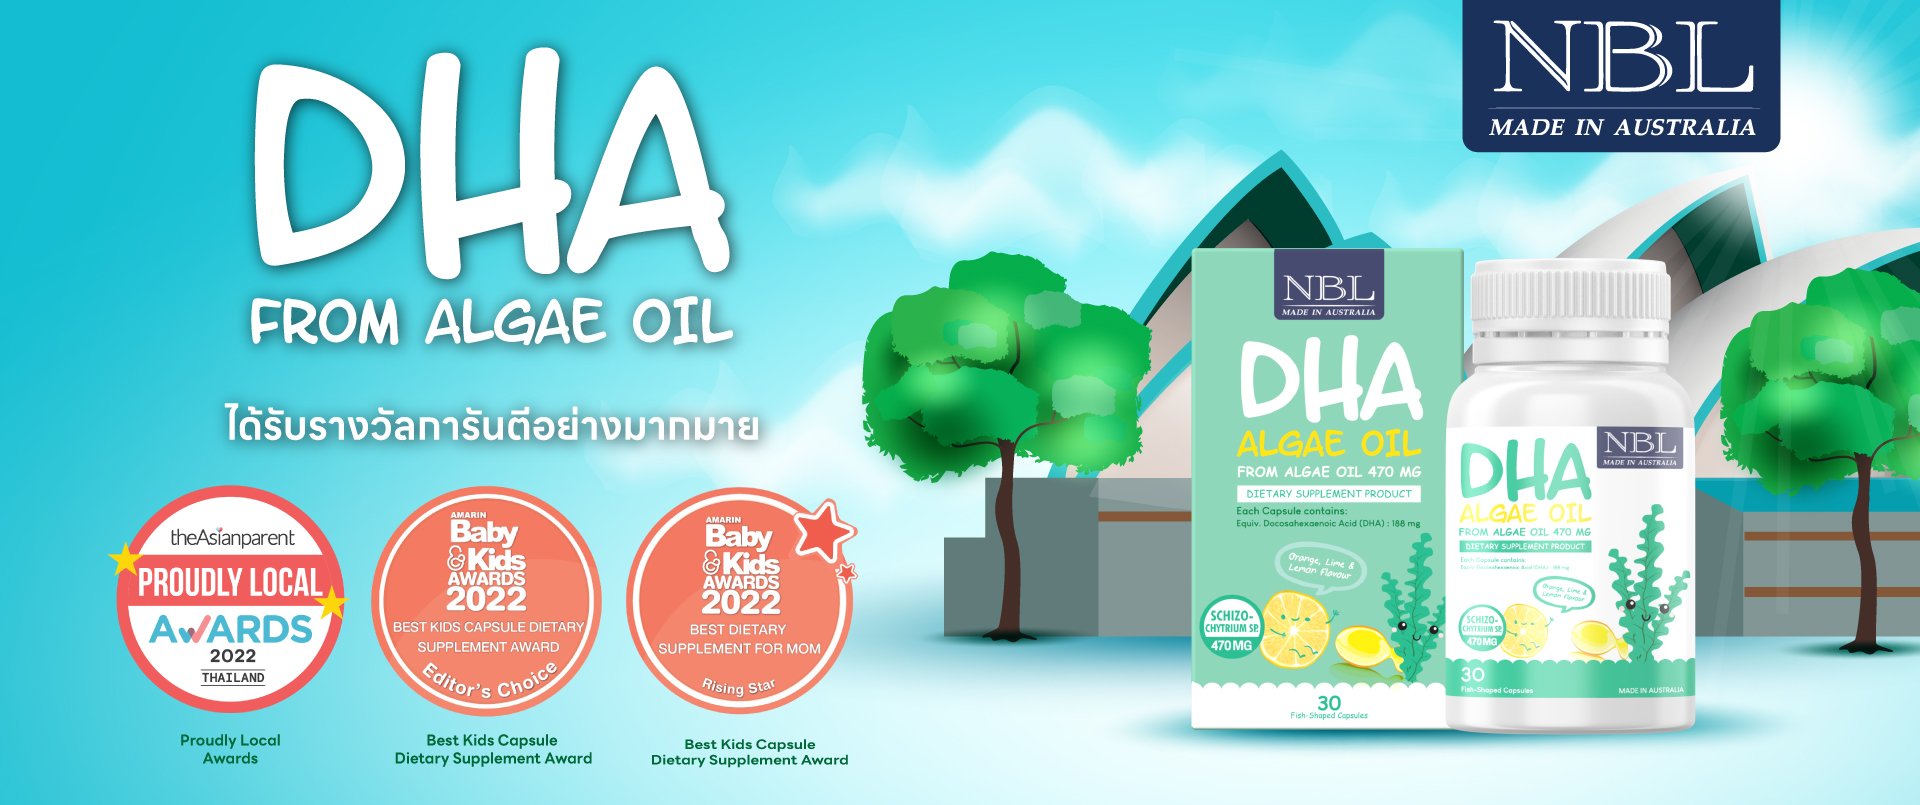 NBL DHA Algae Oil